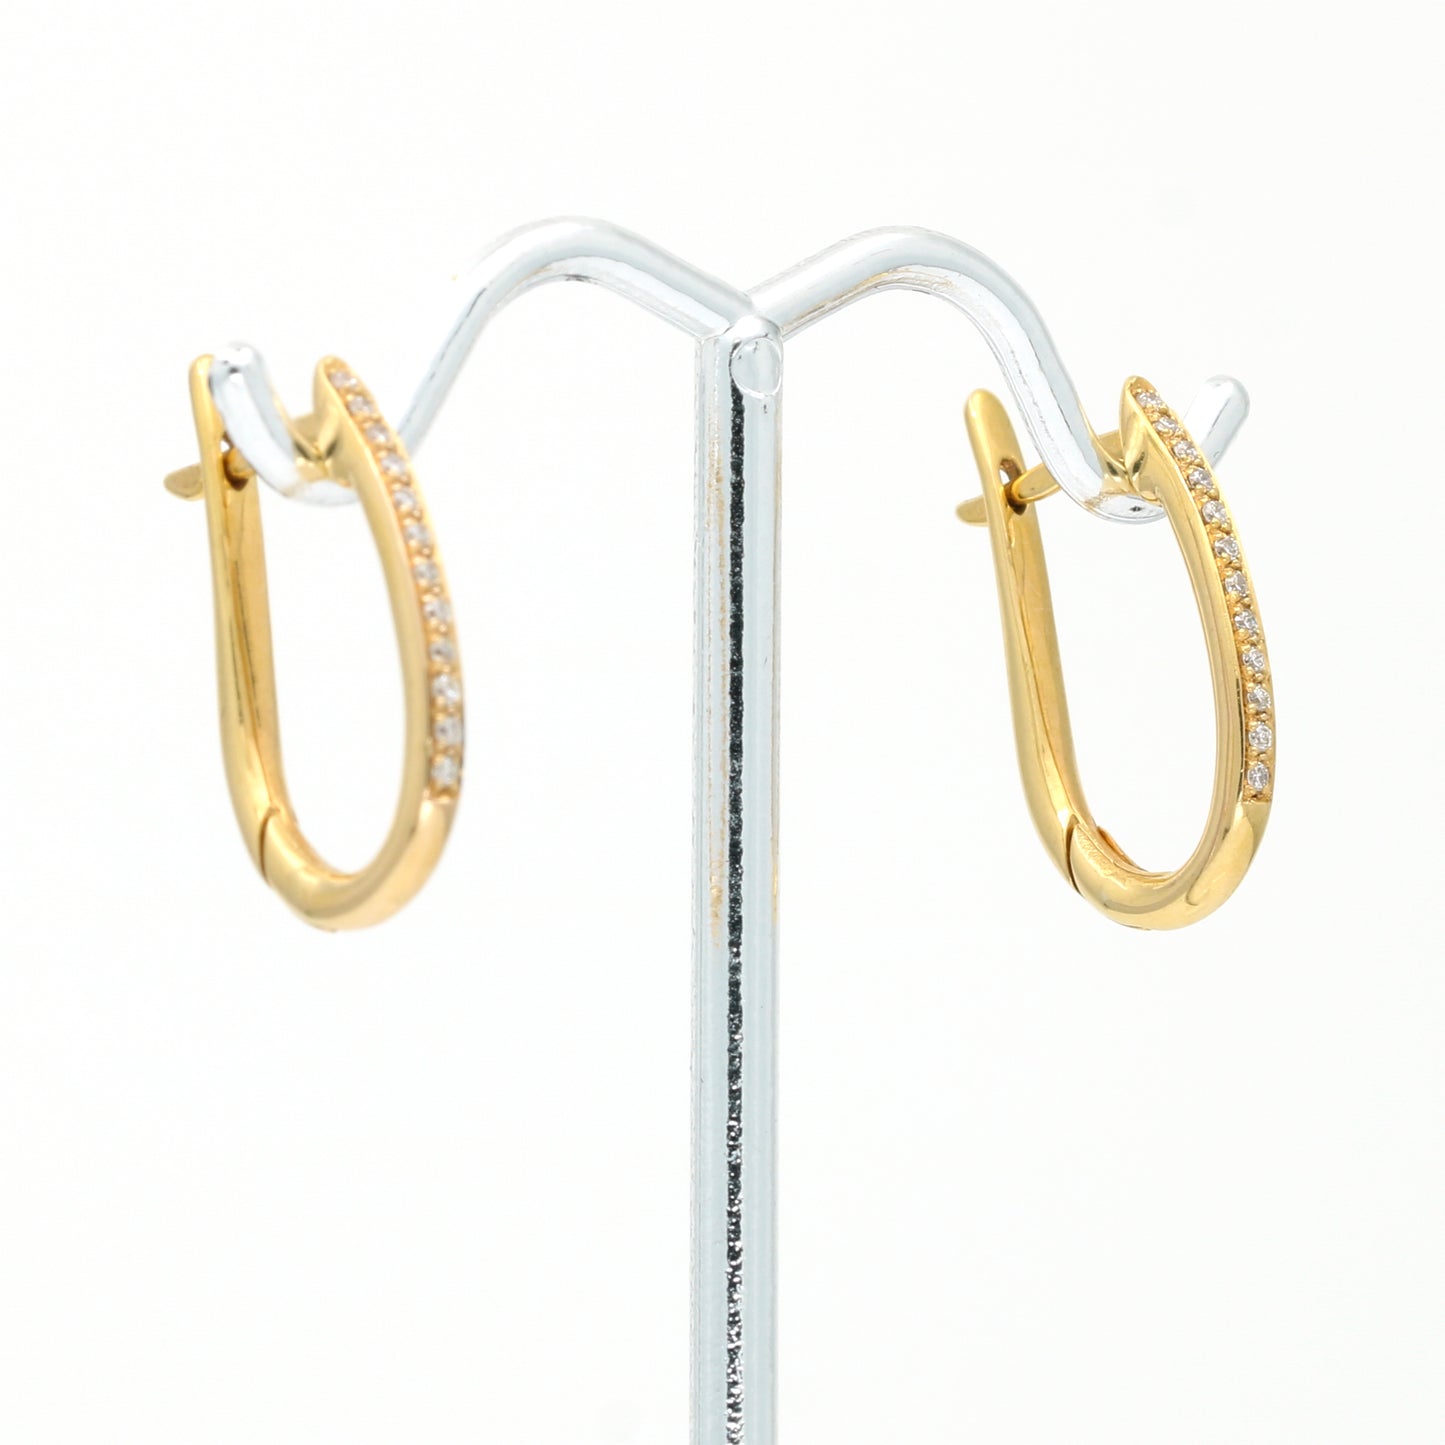 Modern Minimalist Diamond Oval Elongated Hoop Earrings in 18k Rose Gold